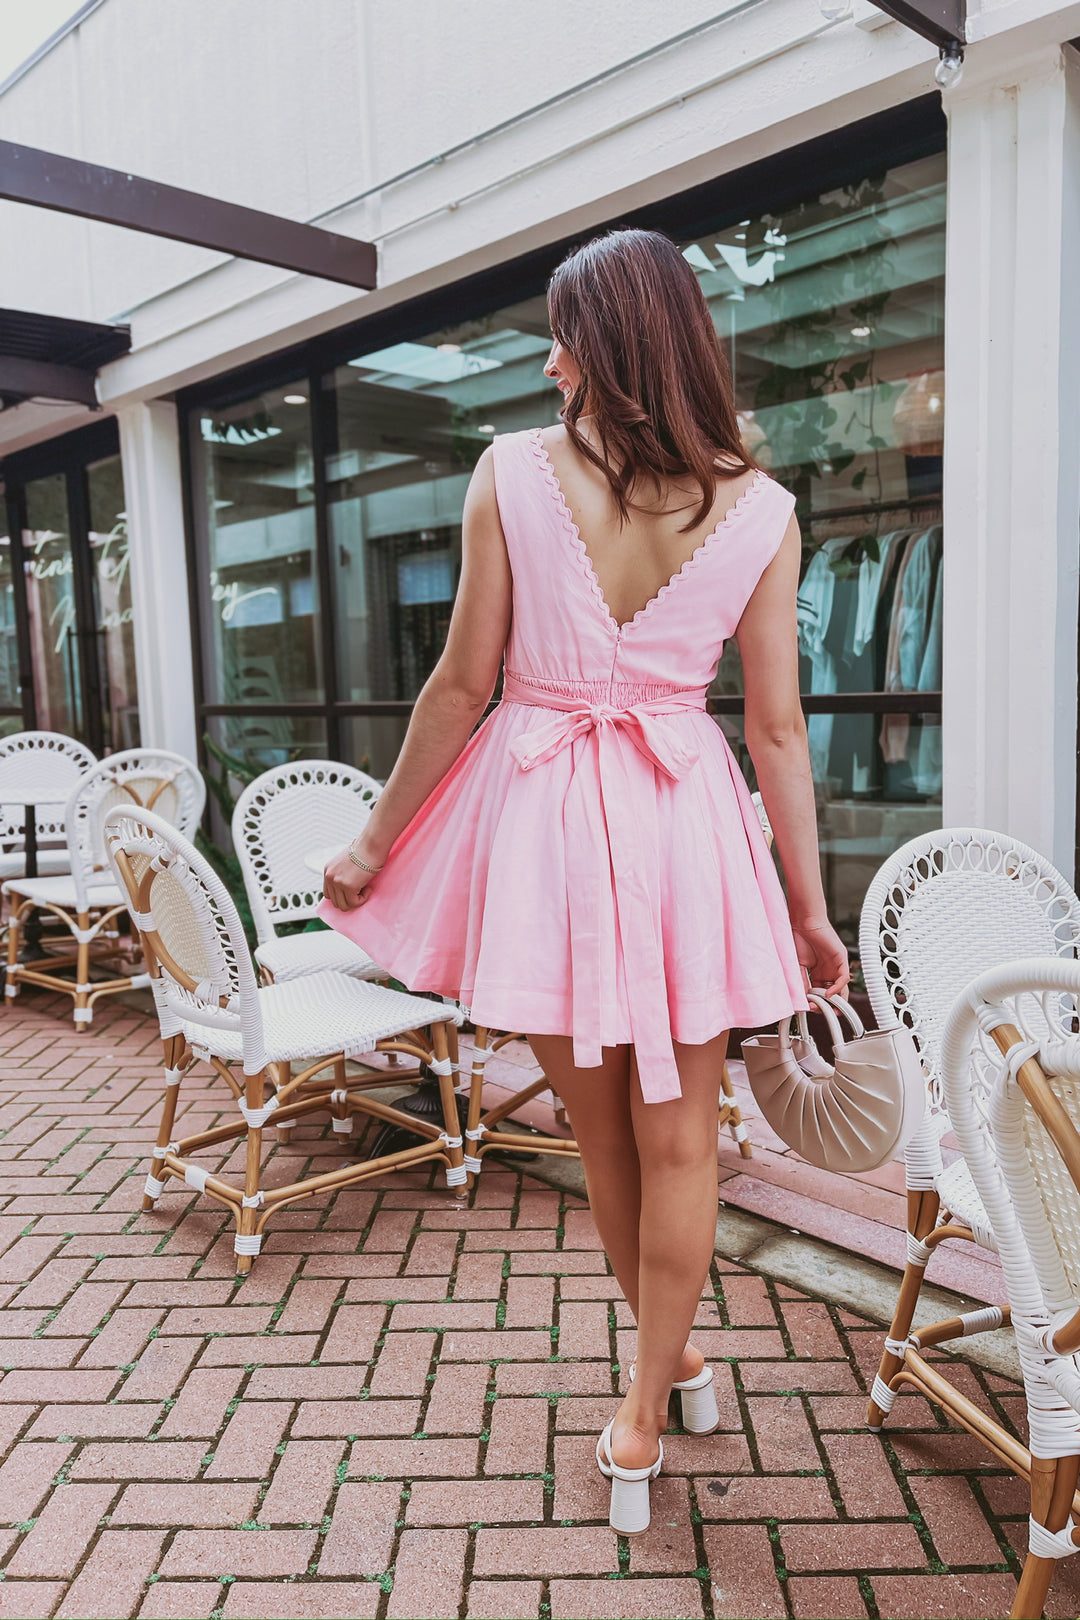 The Pretty In Pink Mini Dress